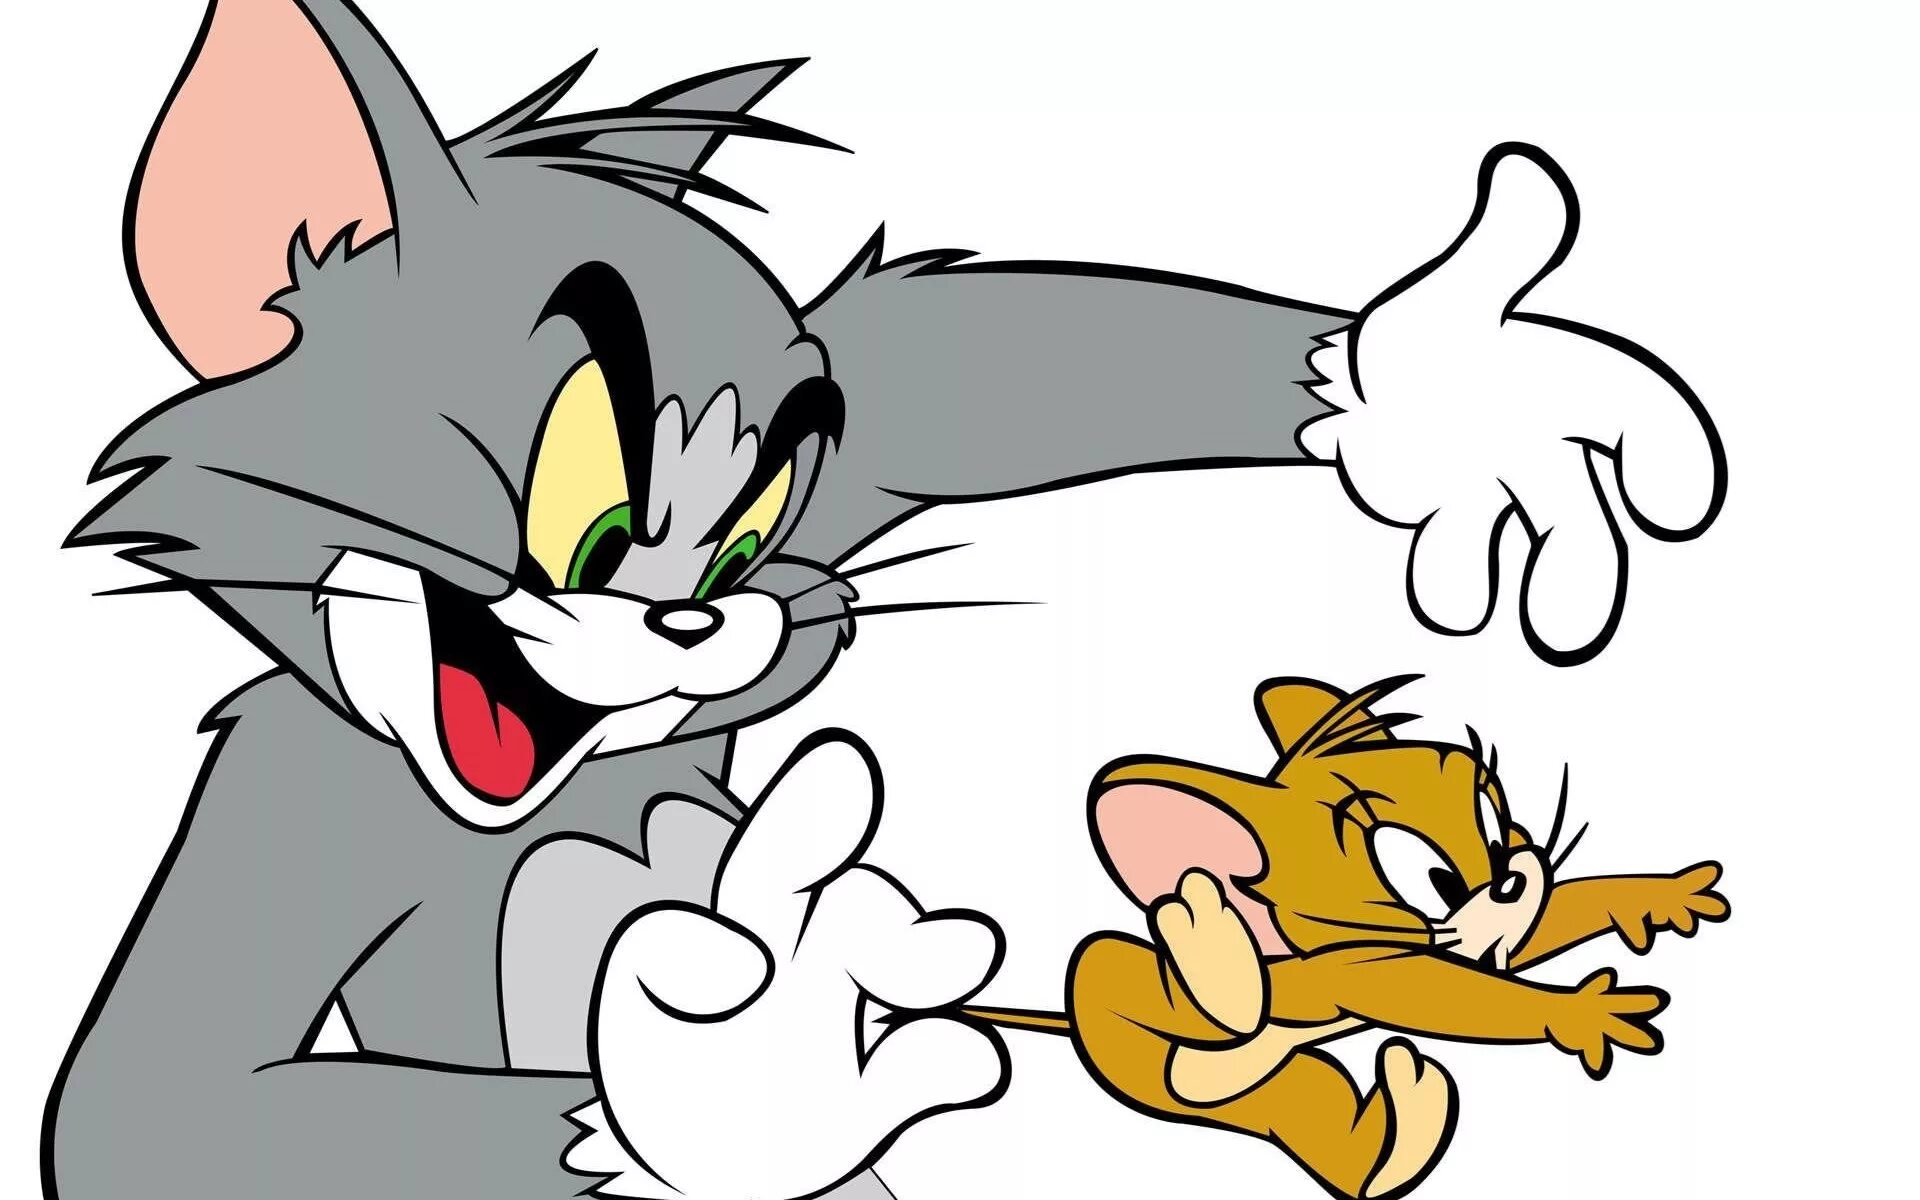 Tom funny. Tom and Jerry. Том и Джерри Tom and Jerry. Том и Джерри картинки. Мультяшный том.